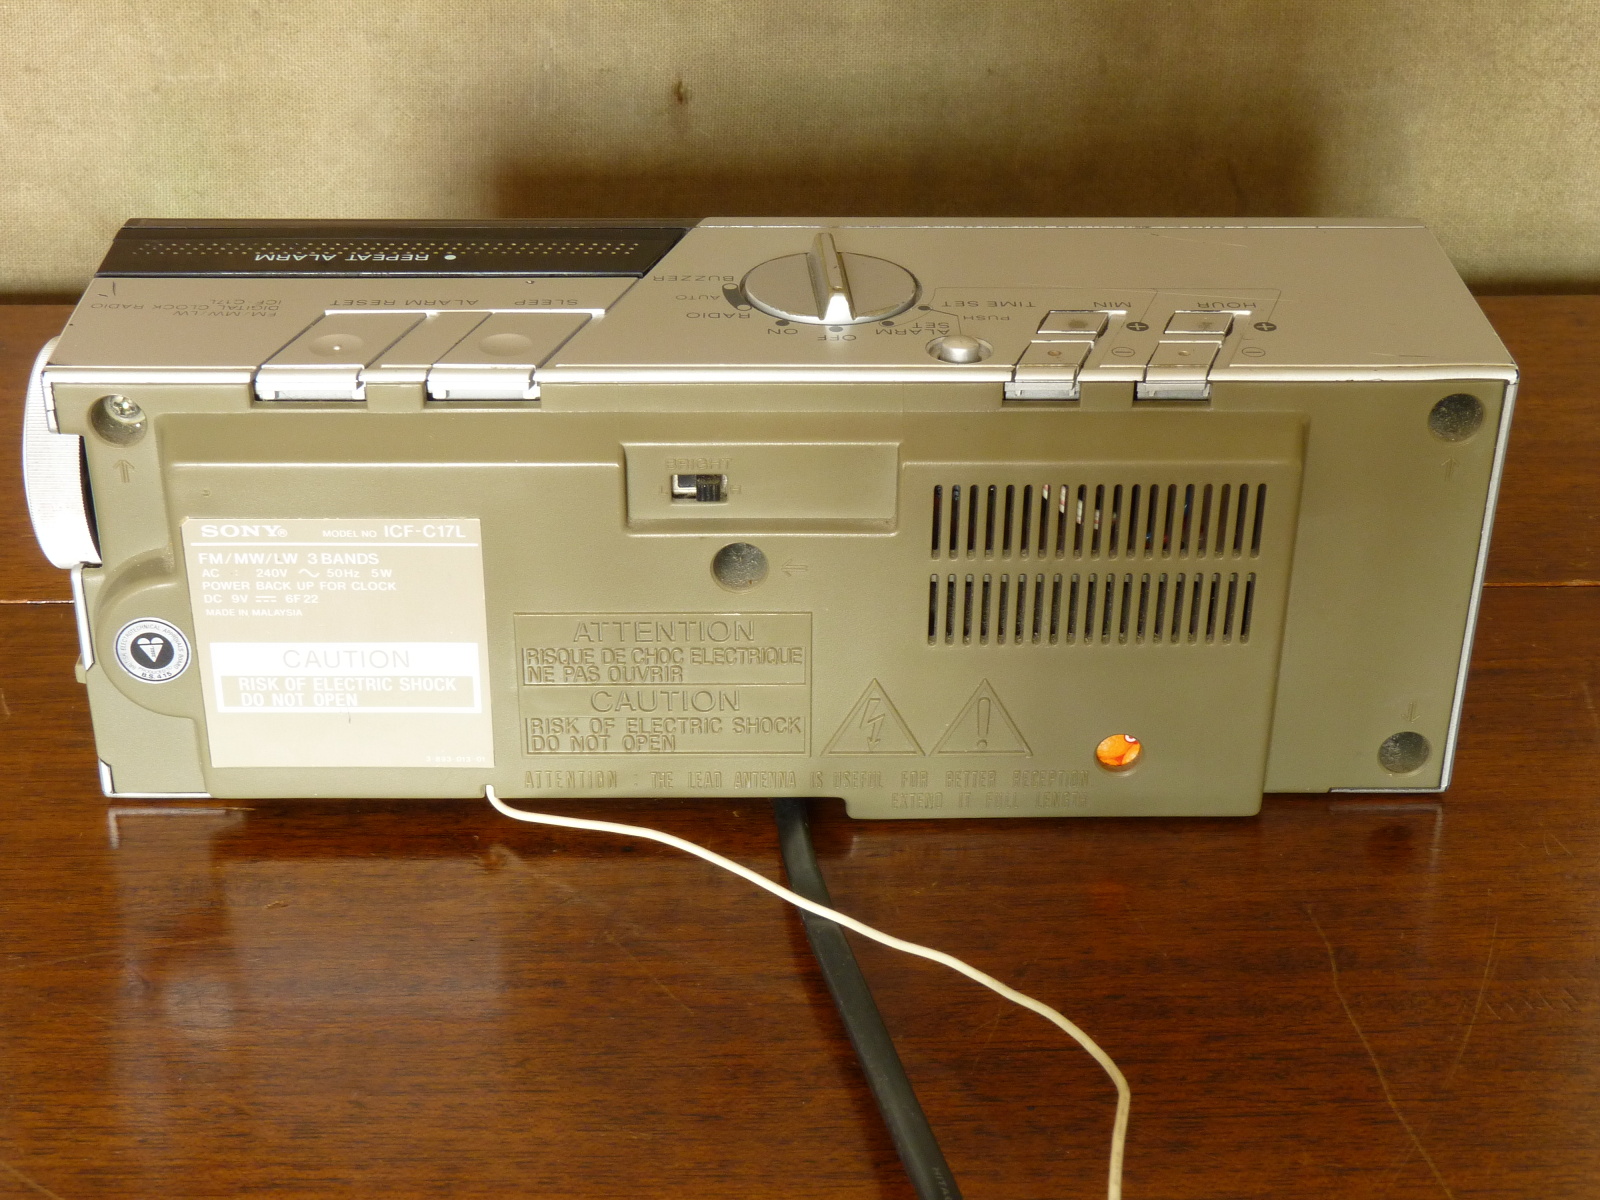 Sony - ICF C16L Digimatic radio réveil